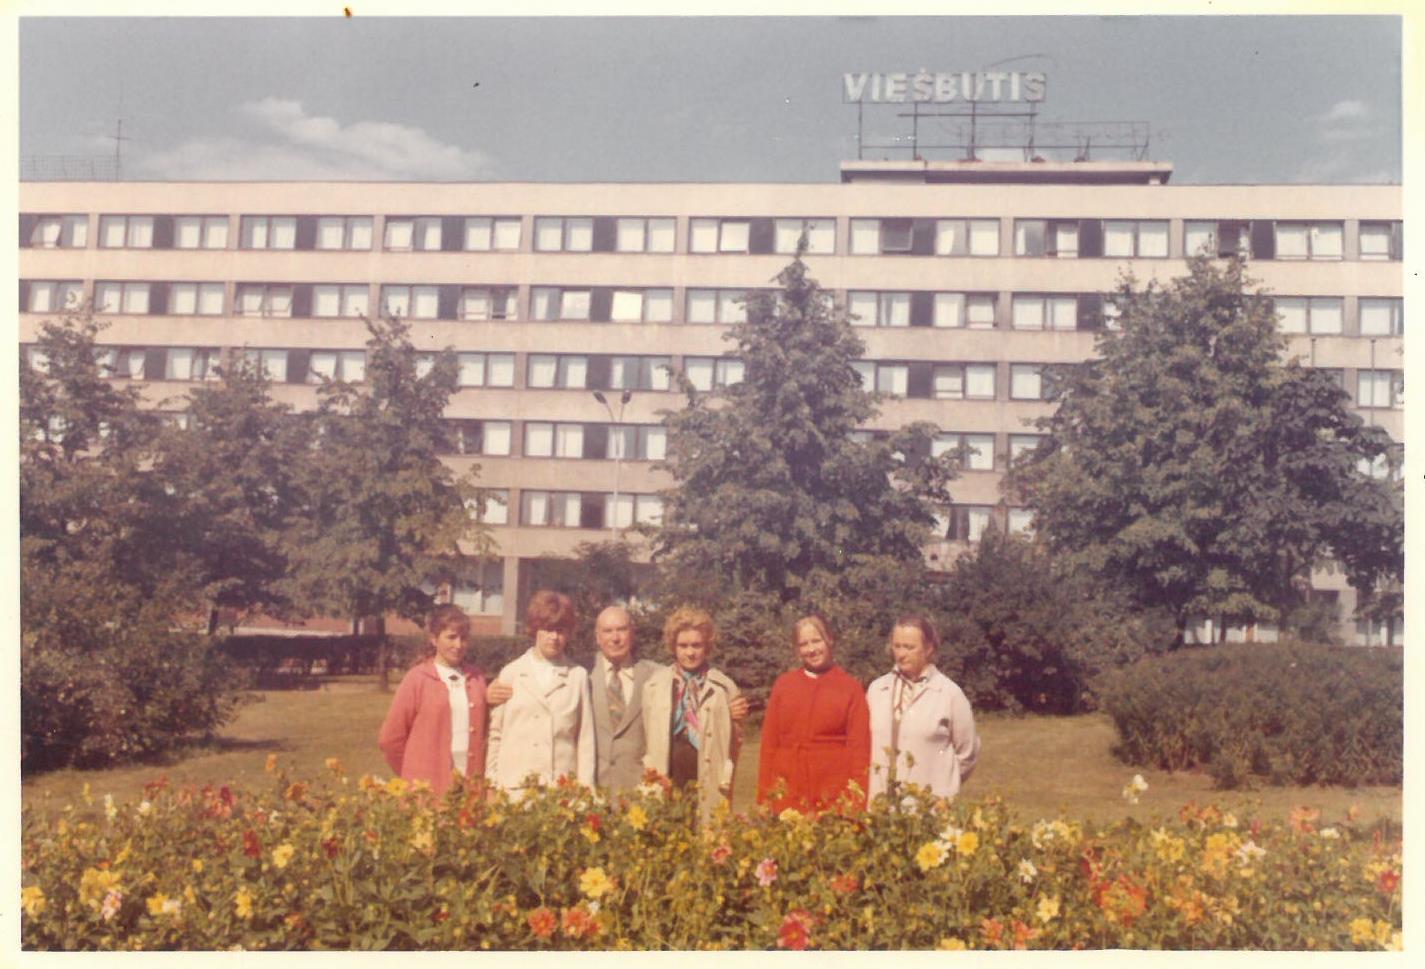 Pirmasis Kazio Balčiūno vizitas Lietuvoje, praleidus ilgus tremties metus Jungtinėse Amerikos Valstijose. K. Balčiūnas (trečias iš kairės) su artimaisiais. Vilnius, 1972 m. rugsėjo 3 d. 